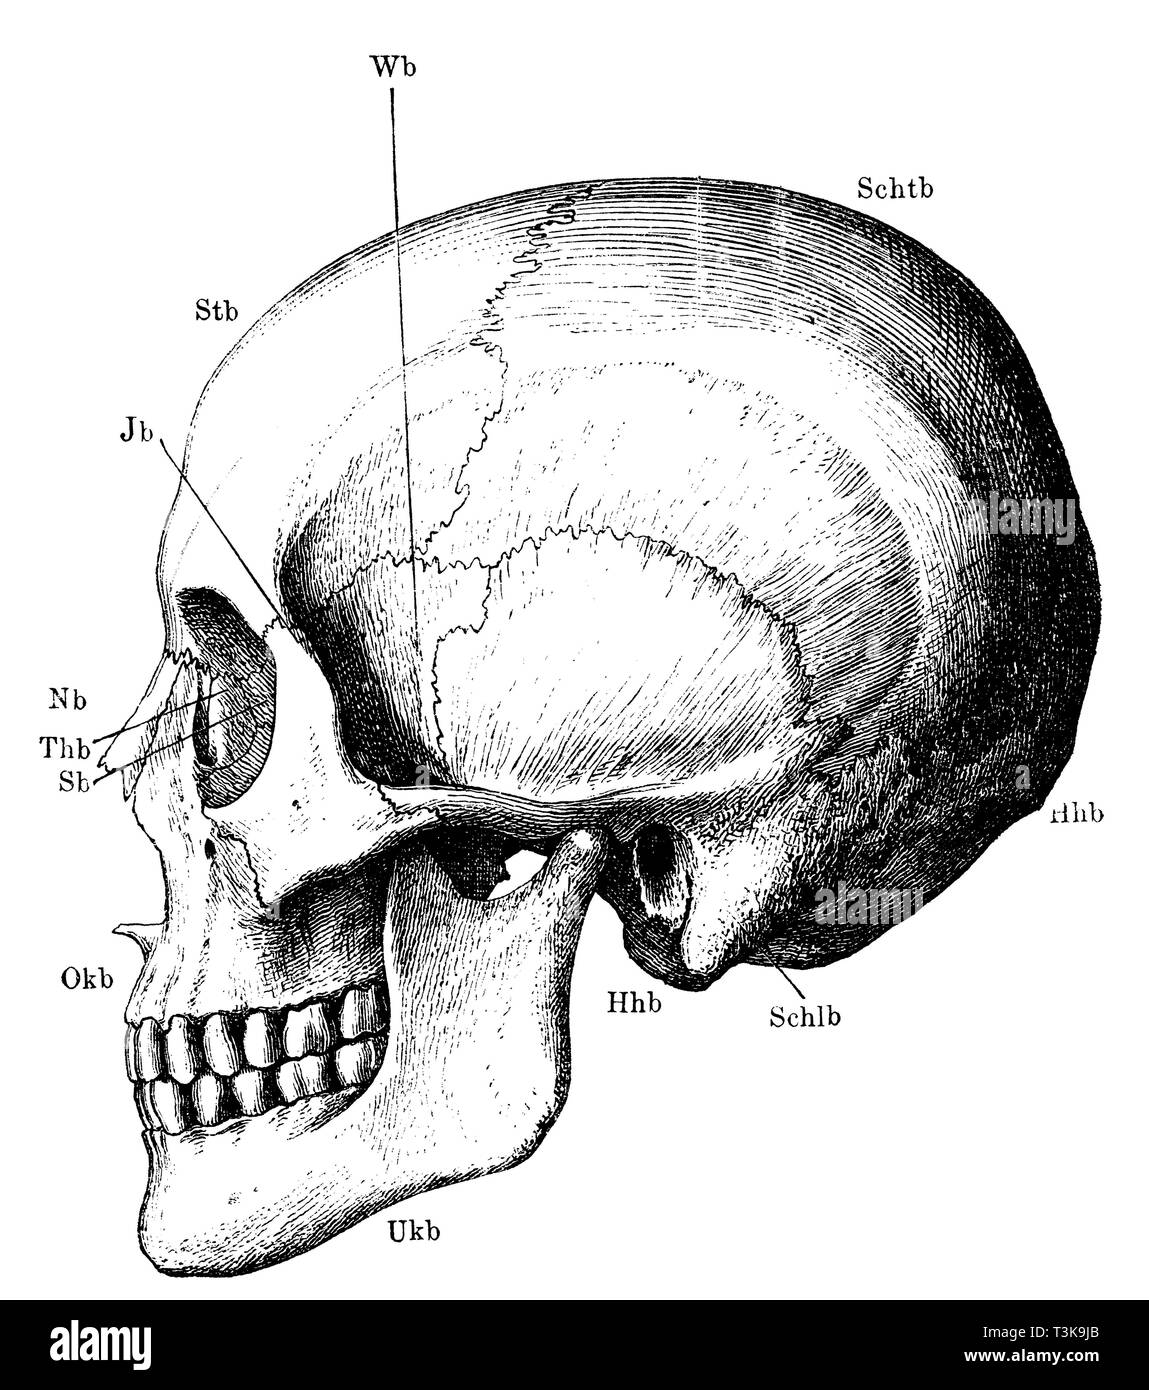 Umano: scheletro di testa nel profilo. Btb) Fronte osso; BTB) osso parietale; Hhb) osso occipitale; Schlb) Tempio osso; Wb) Wasp osso; Ukb) dell'osso mandibolare; Okb) ganascia superiore osso; Thb) osso lacrimale; Sb) sinusite etmoide osso; Nb) osso nasale; Jb) zigomi, anonym Foto Stock